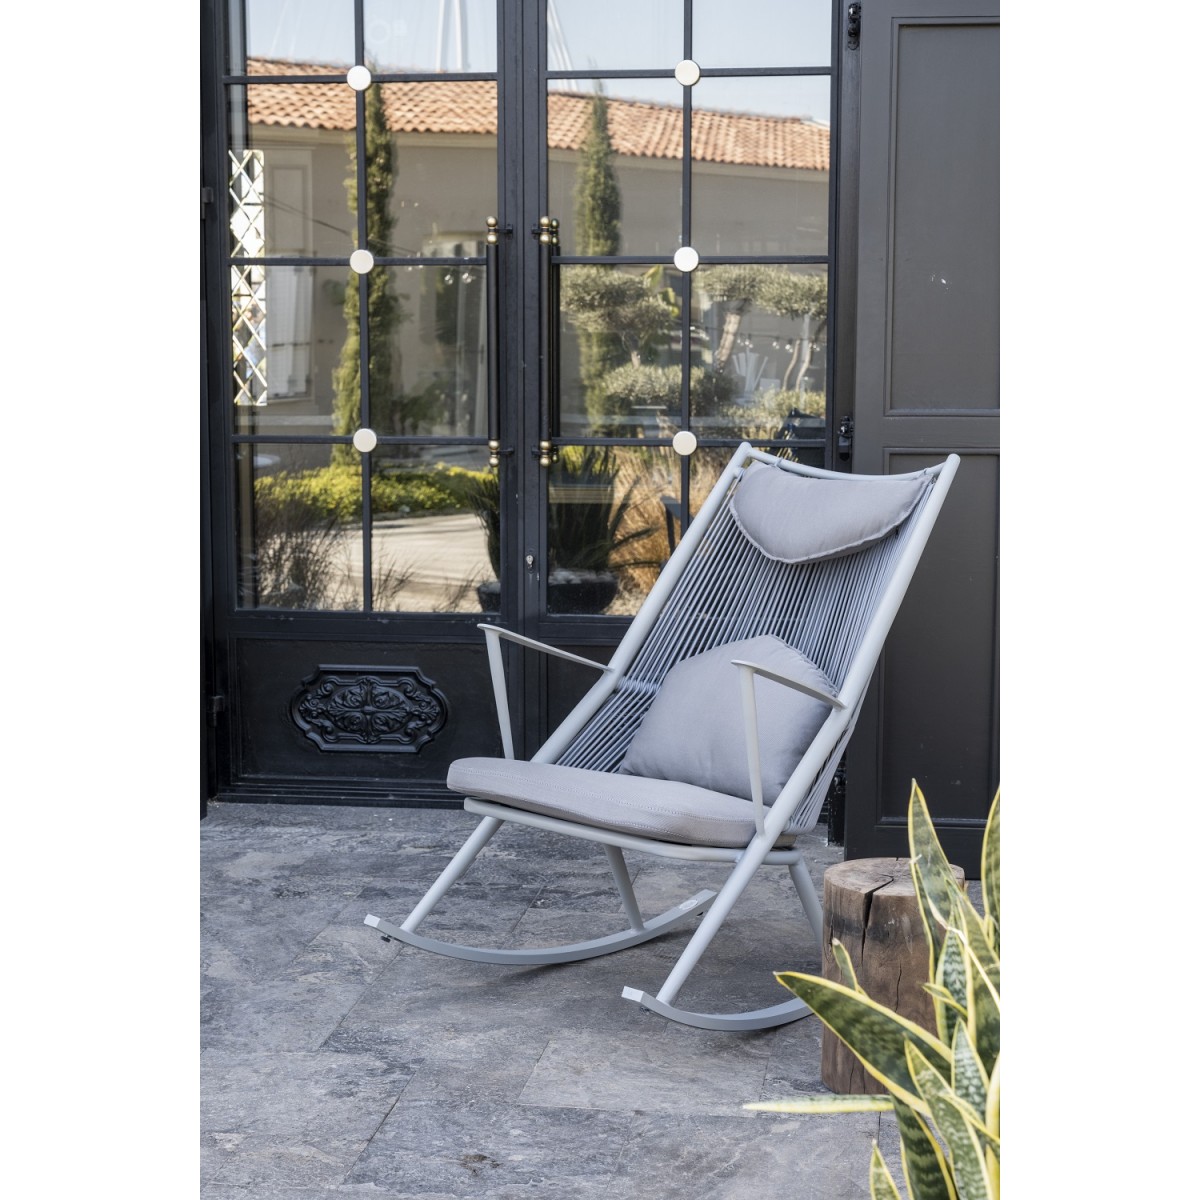 кресло-качалка на террасе металл алюминий сад